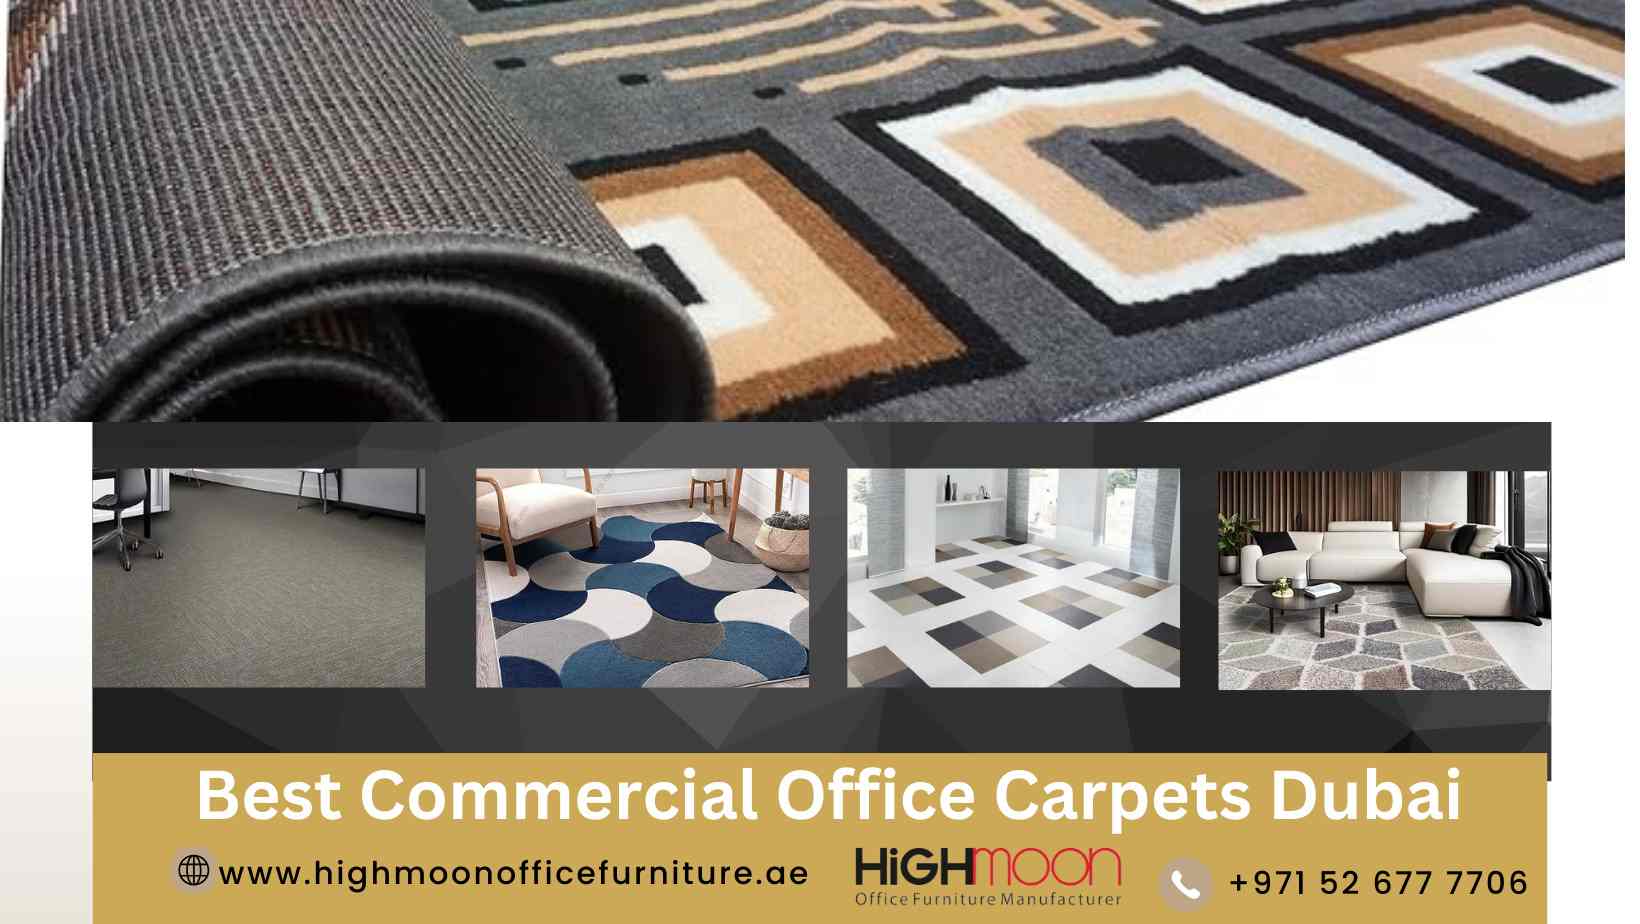 Best Commercial Office Carpets Dubai